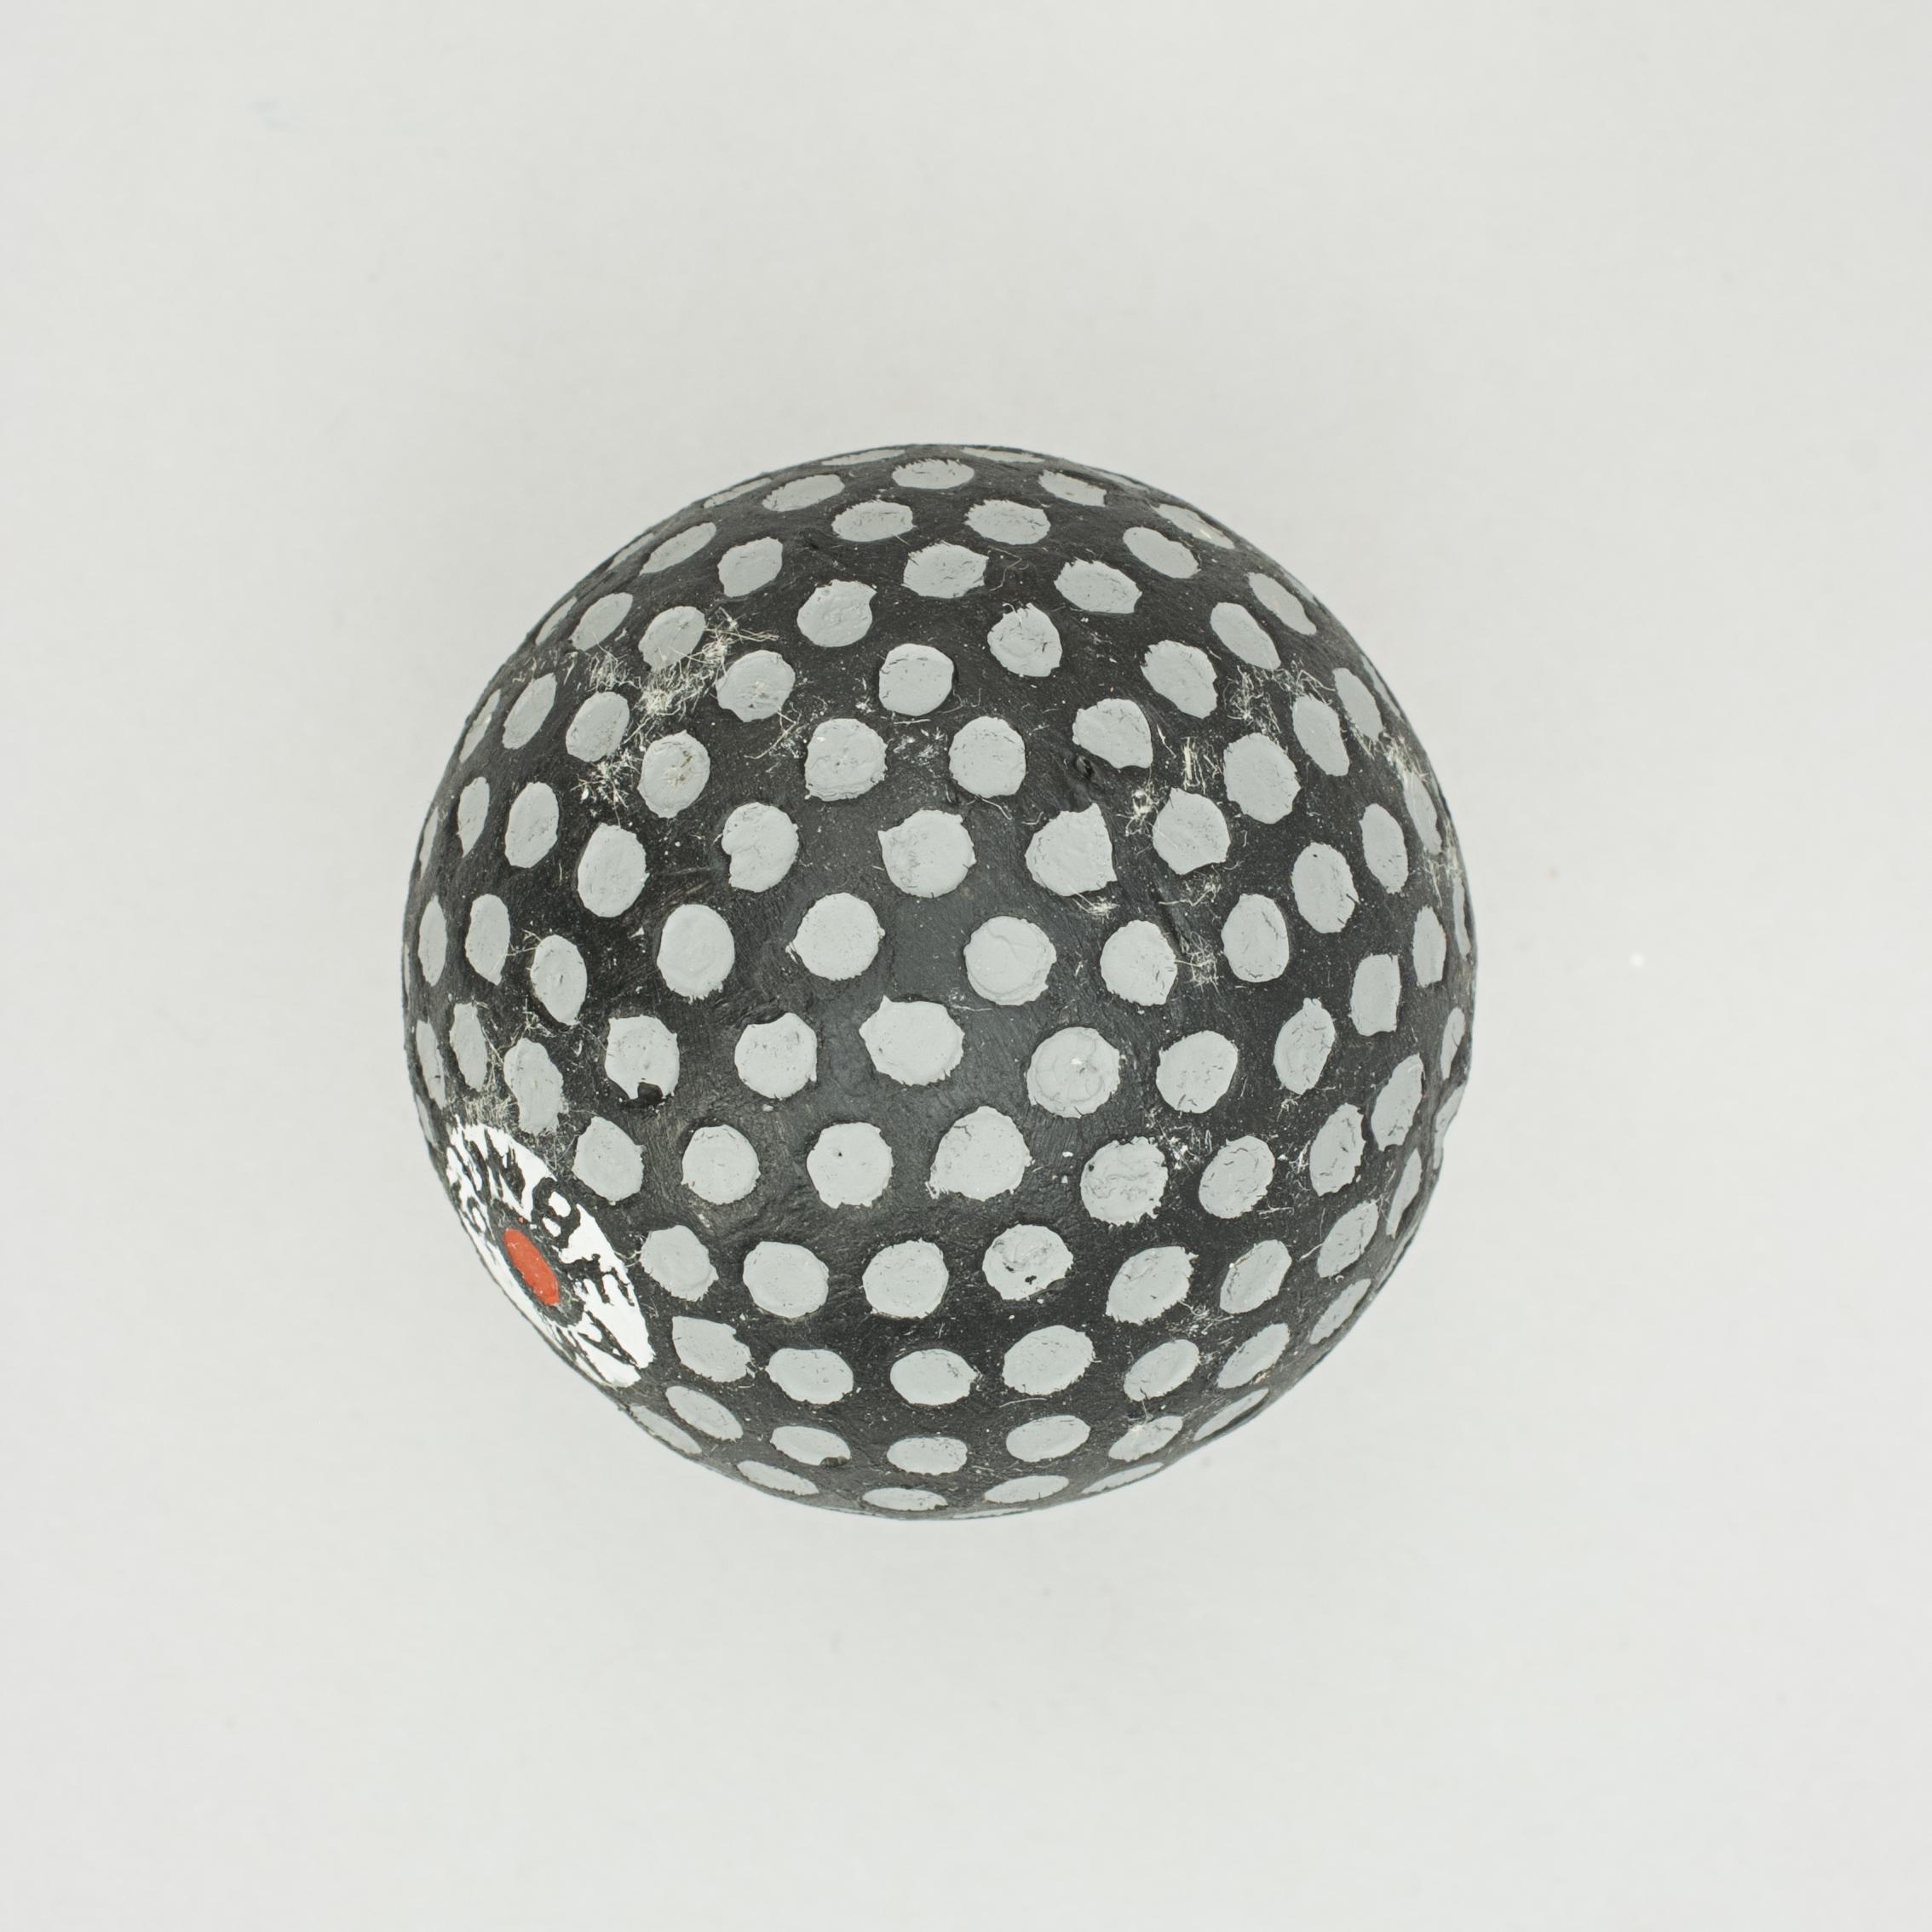 European Unusual Mesh Pattern Golf Ball 'Durable', 1920s